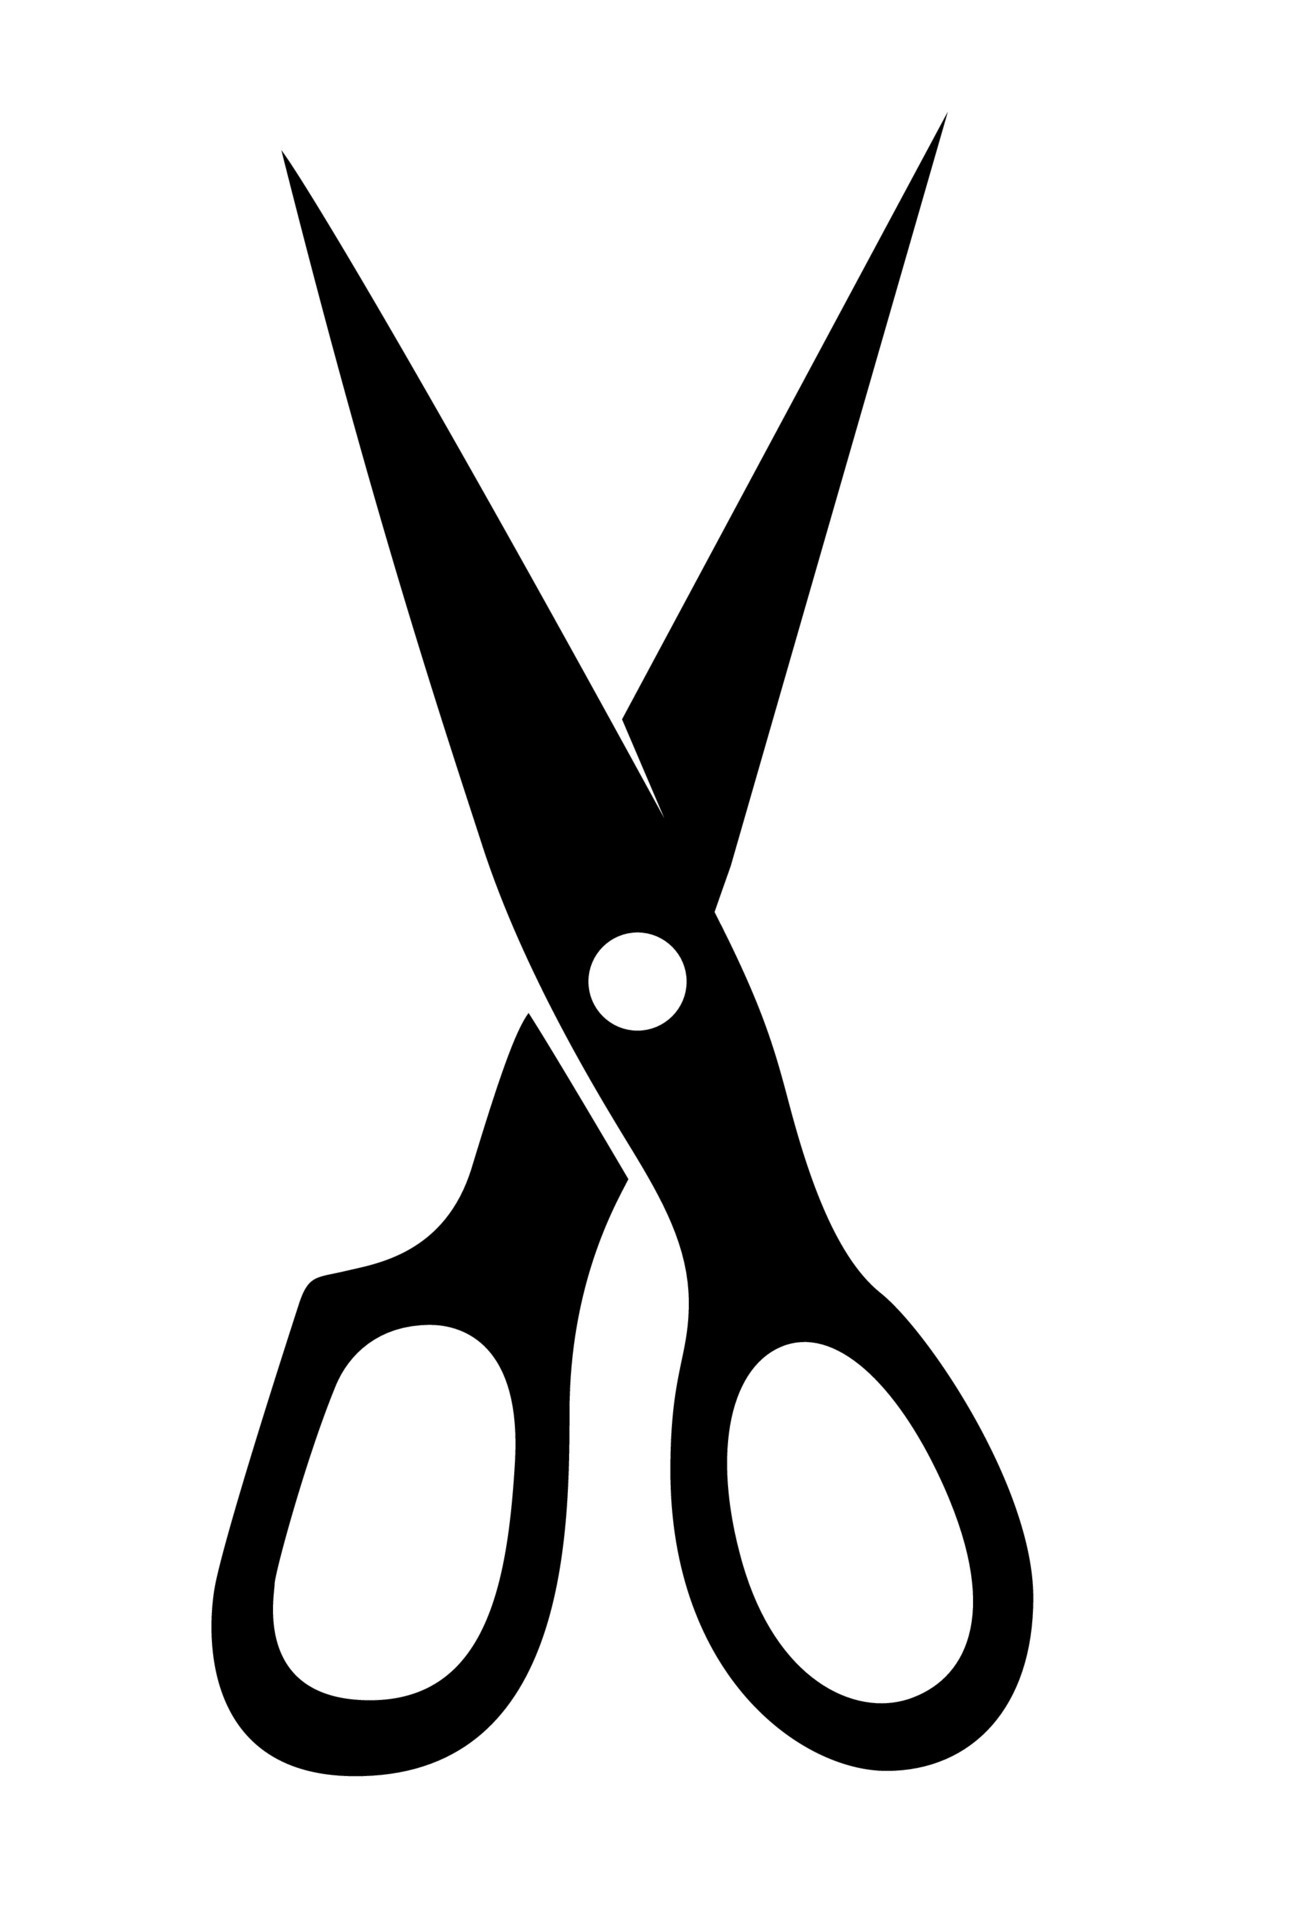 black scissors tool 4222062 Vector Art at Vecteezy